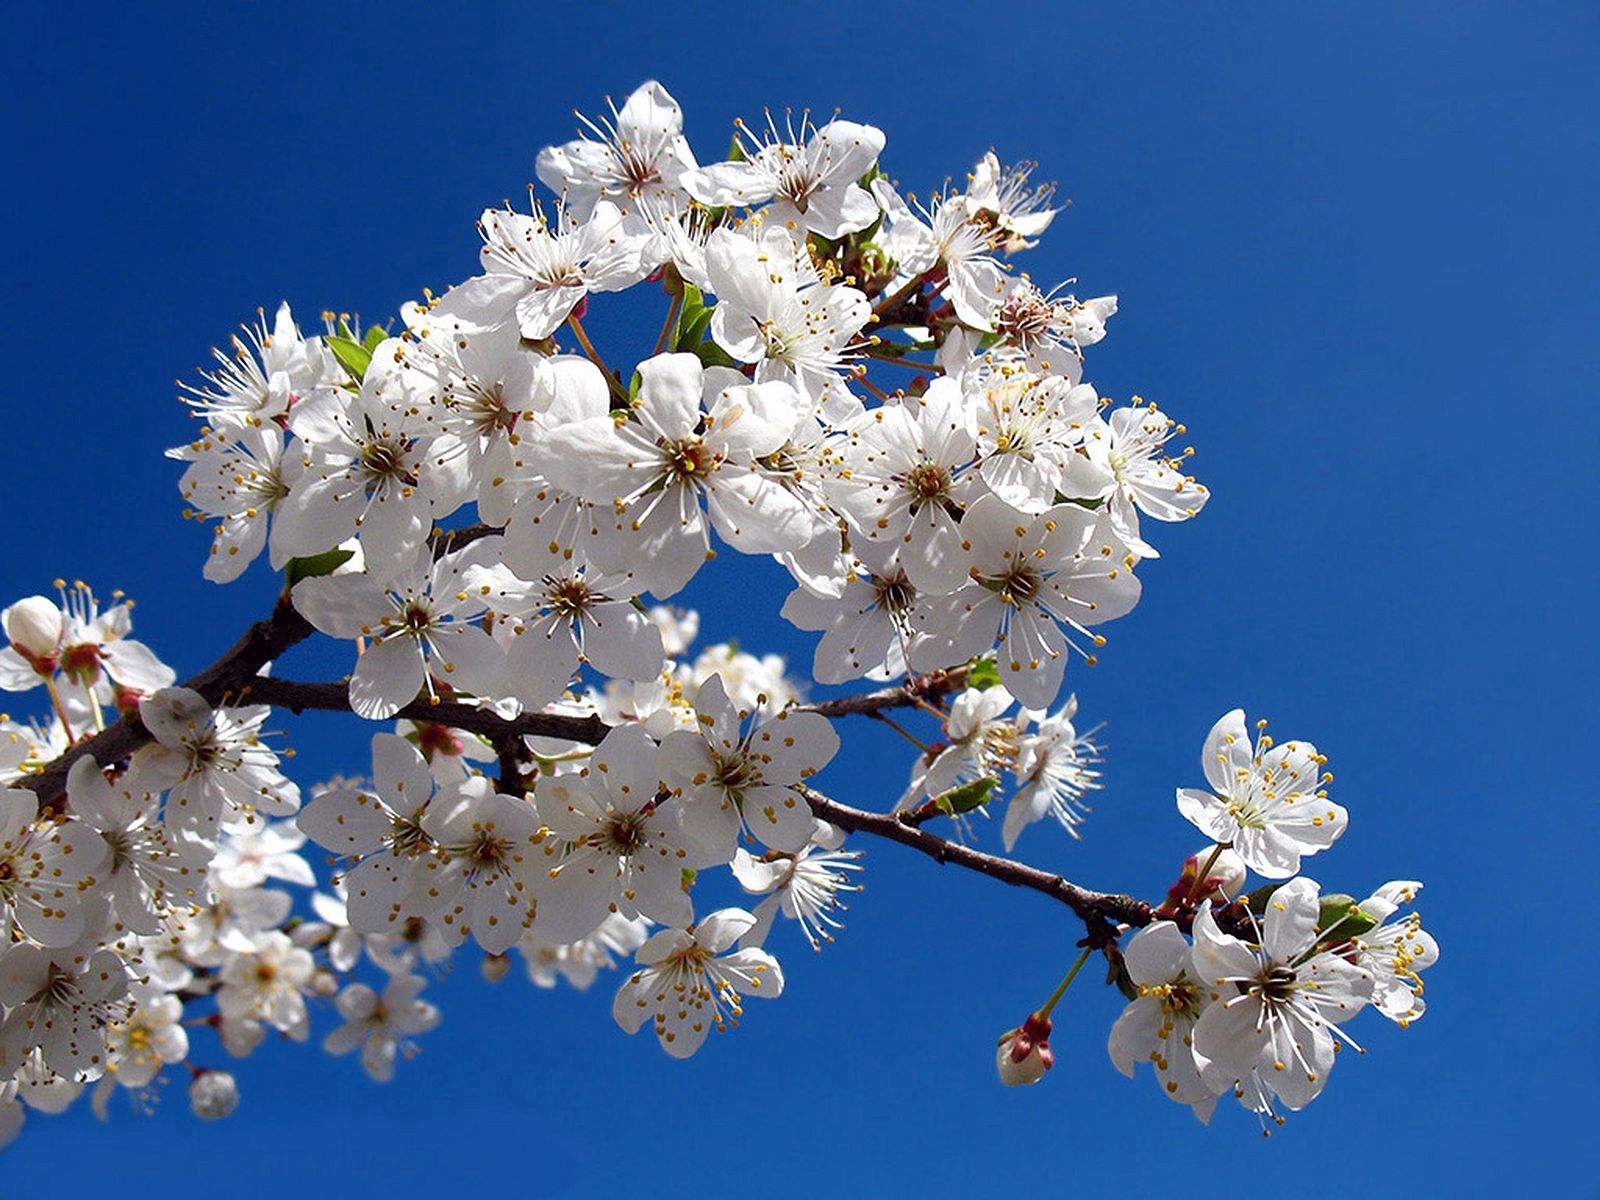 114251 Заставки и Обои Весна на телефон. Скачать небо, ветка, цветы, ясное картинки бесплатно